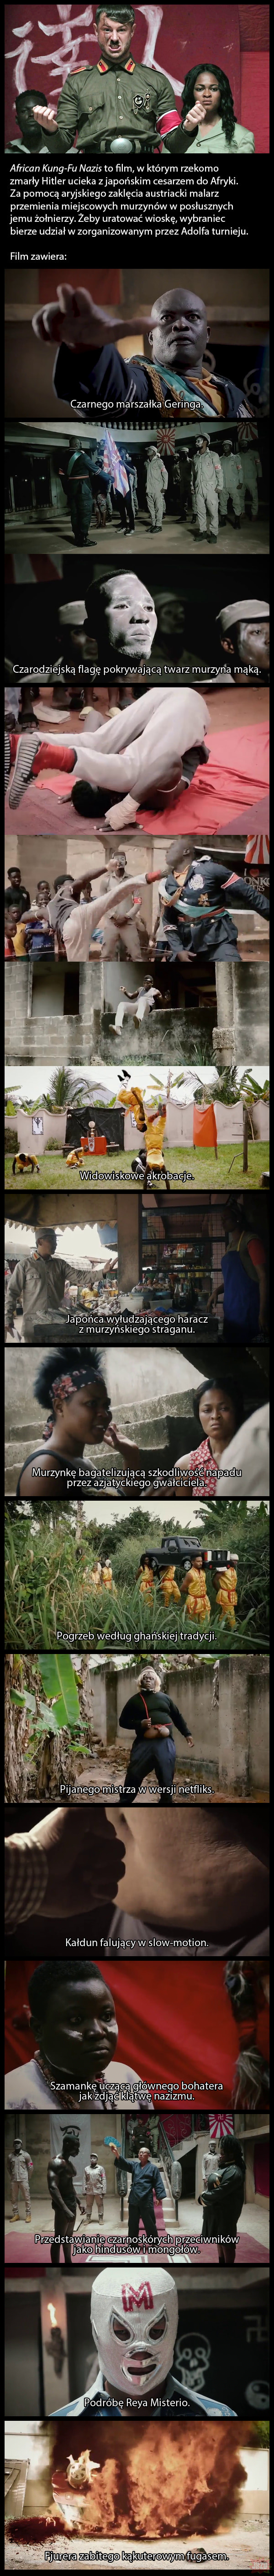 Śmieszne filmy odc. 70 – African Kung-Fu Nazis (2019).